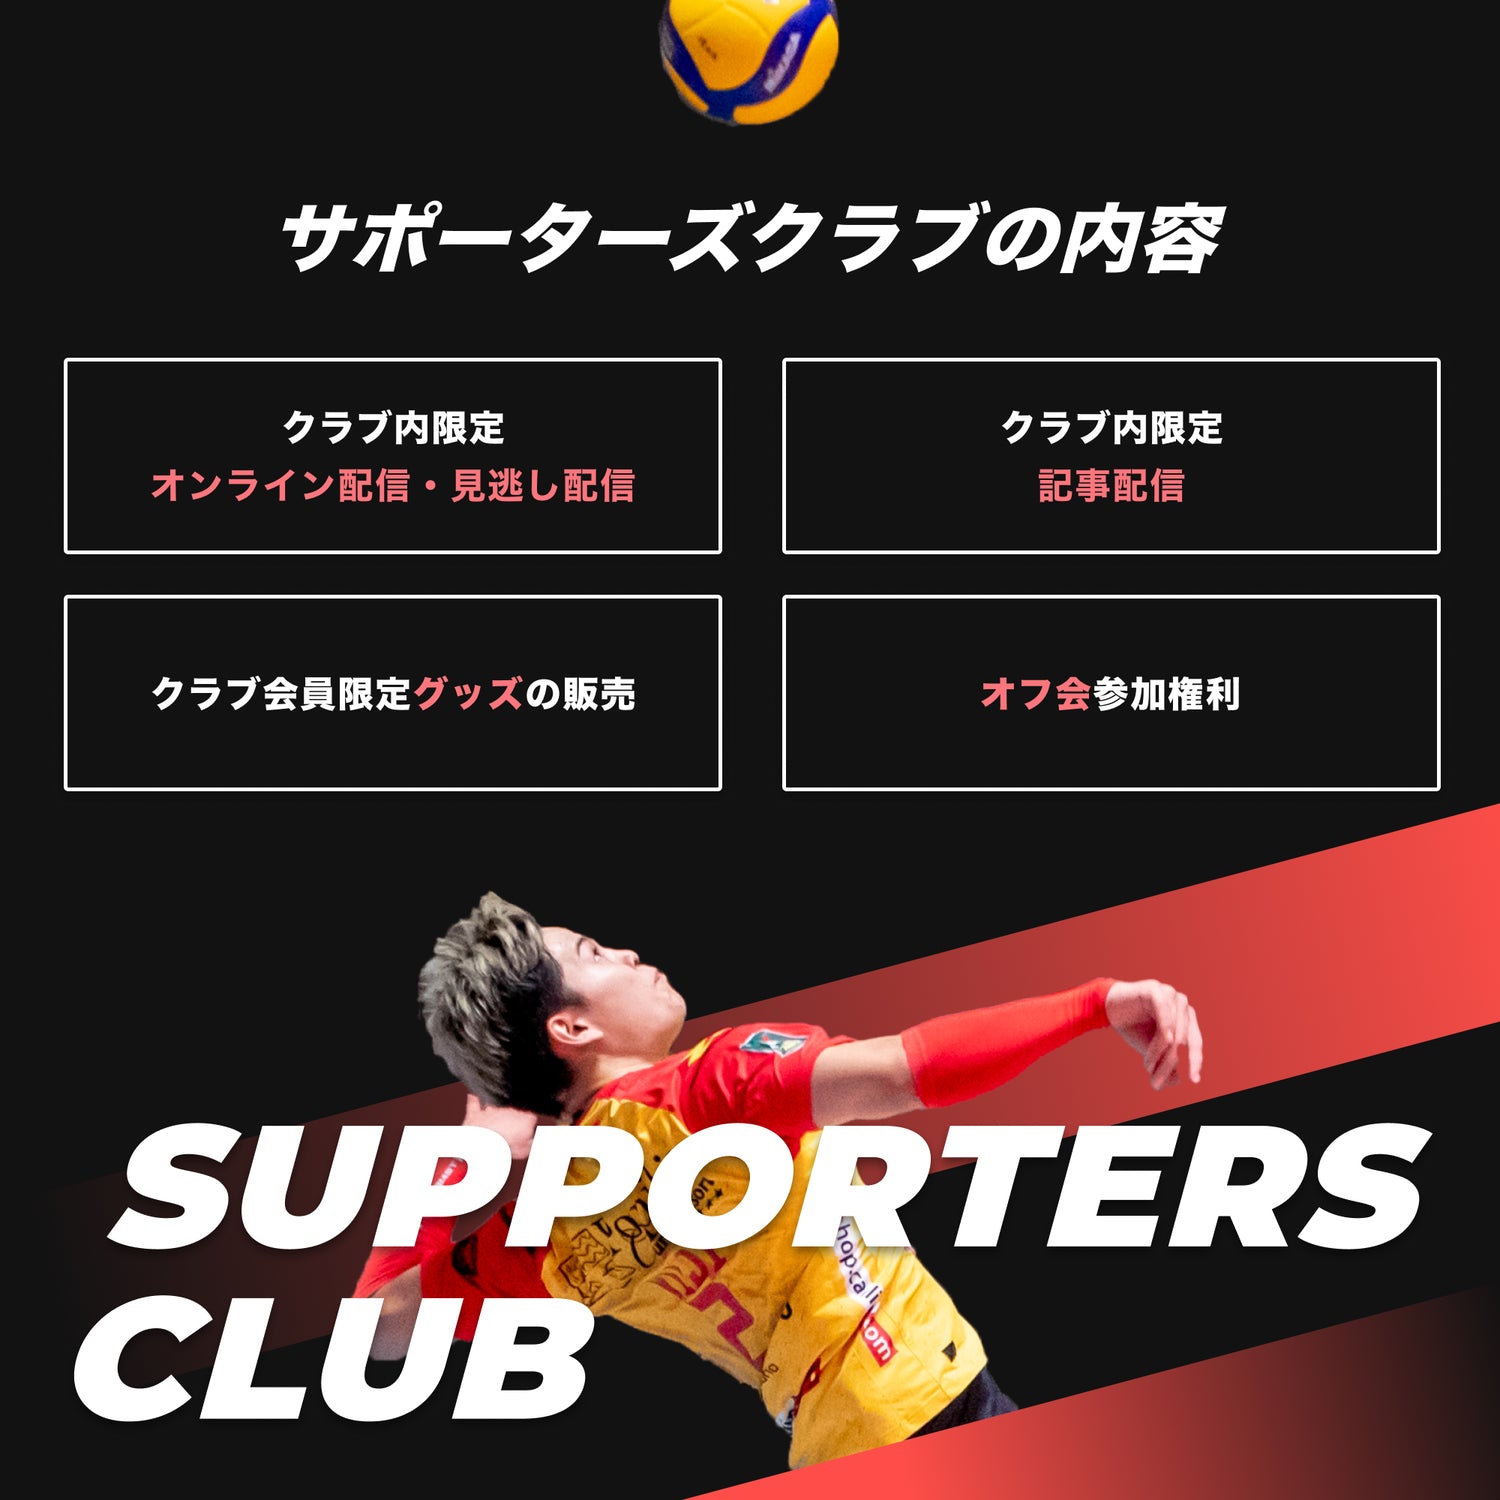 西田有志official Supporters Club Yuji Base